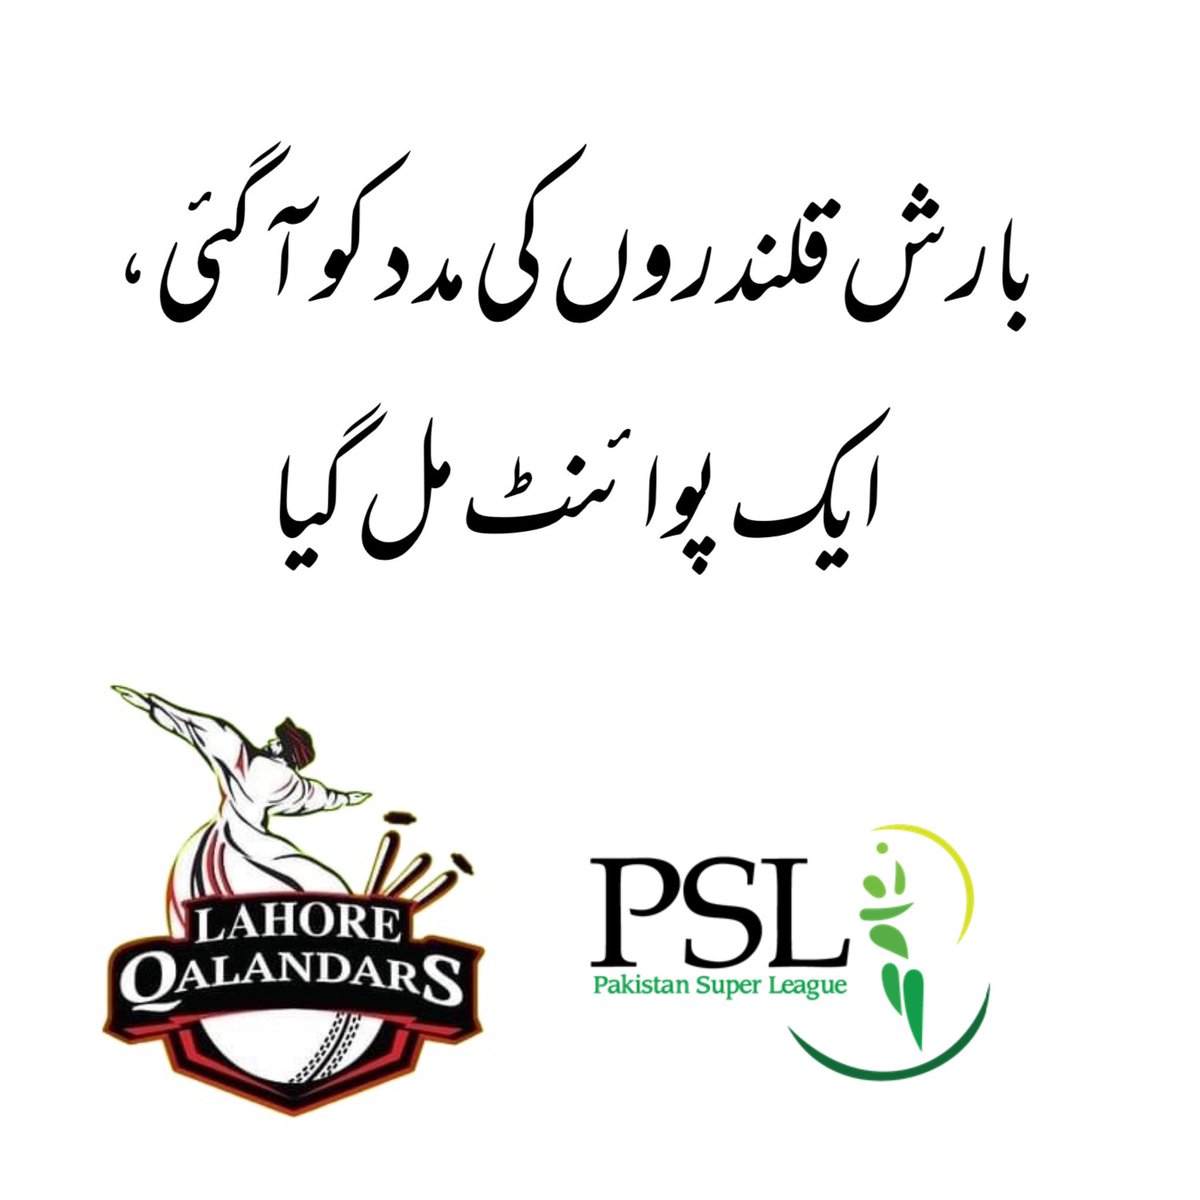 مبارک تمہیں، خوشی کا یہ سما! #PSL9Updates #PSL #LahoreQalanders